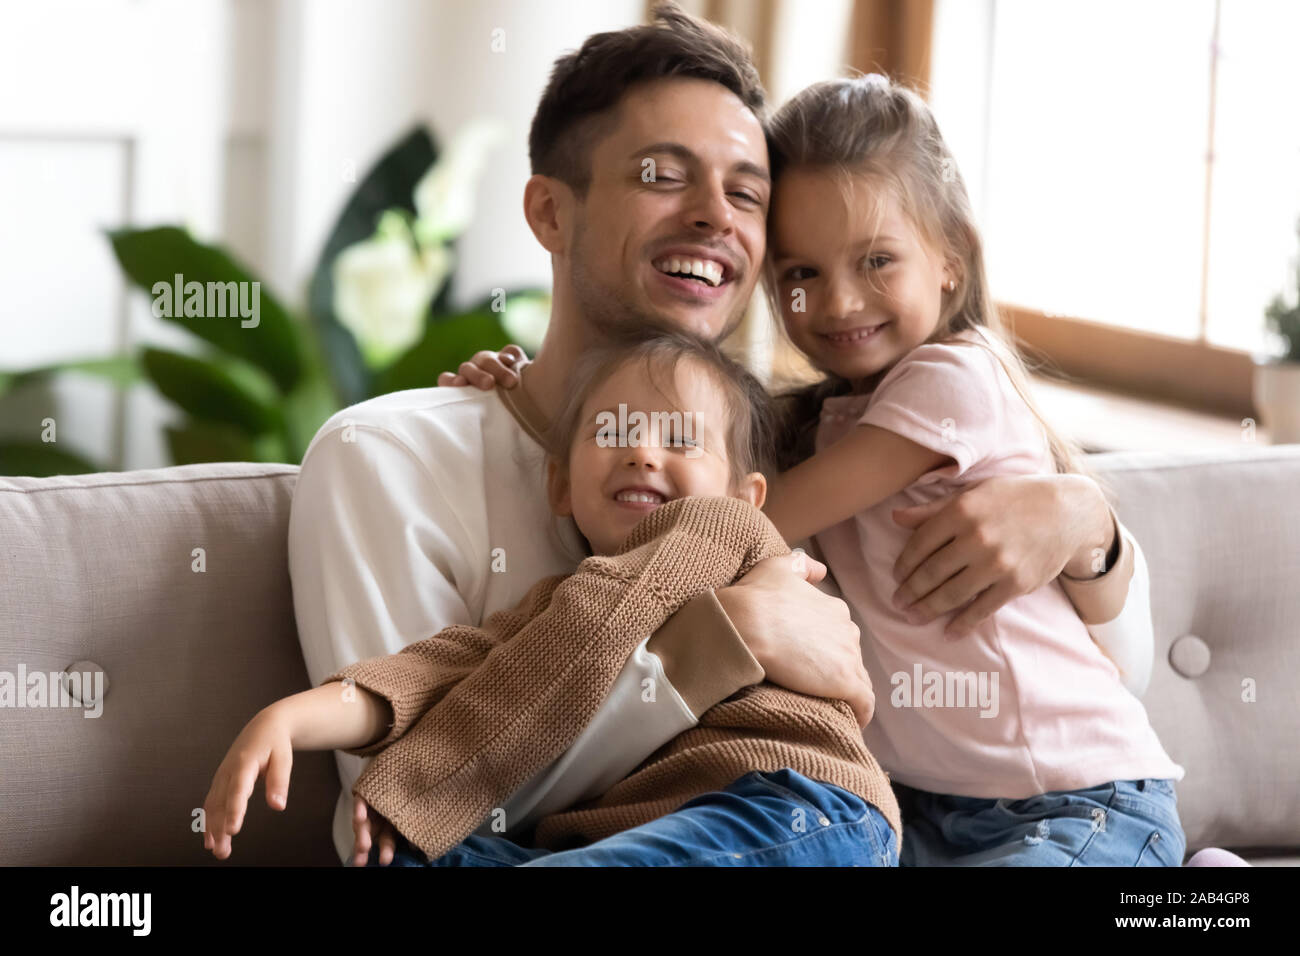 Caring daddy e simpatici ragazzi ragazze abbracci di incollaggio sul divano Foto Stock